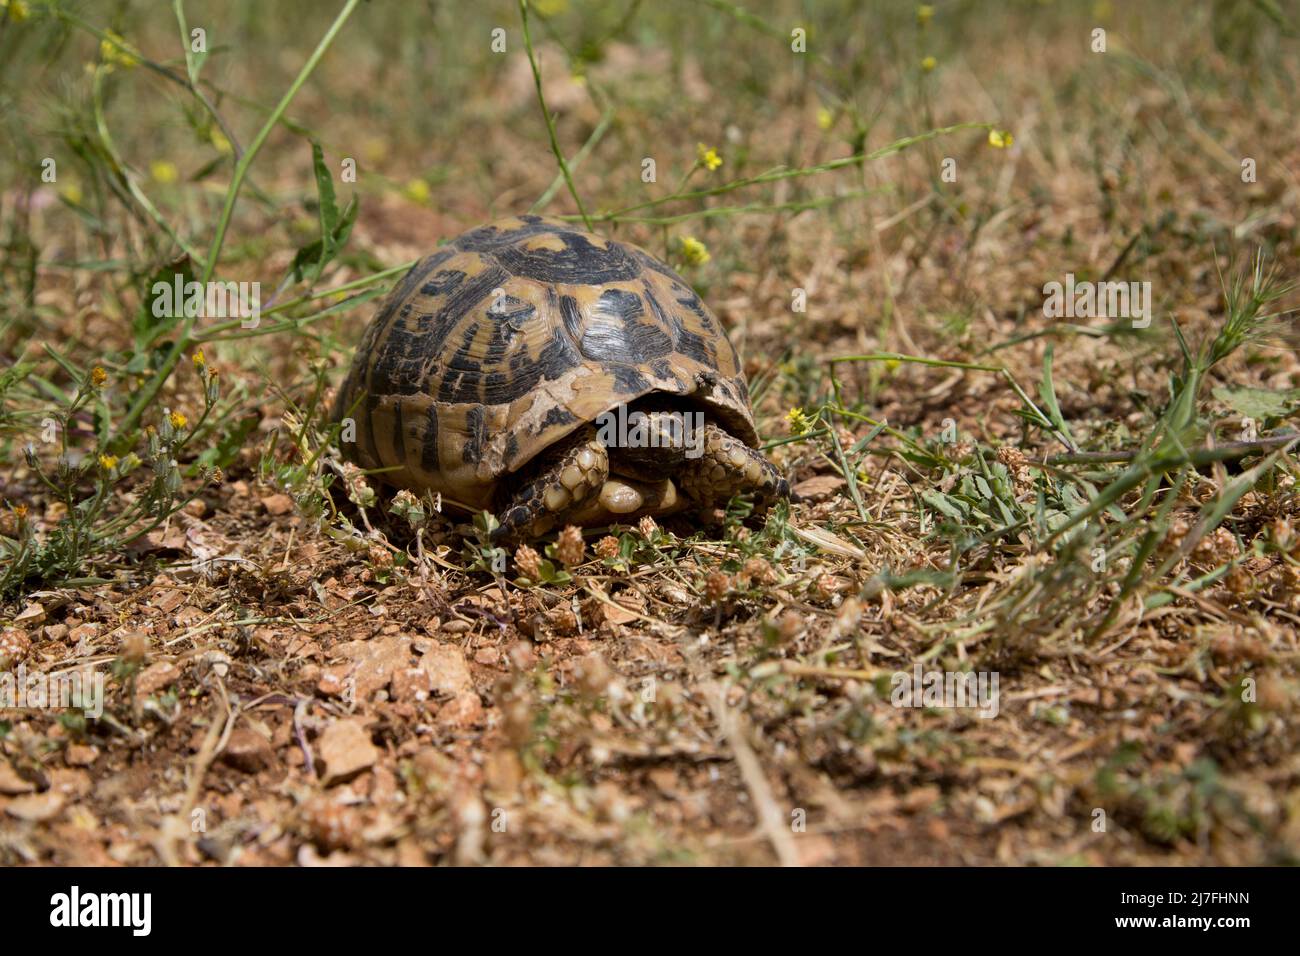 Nahaufnahme einer Schildkröte mit Spurthighed oder einer griechischen Schildkröte (Testudo graeca) in einem Feld. Fotografiert in Israel im März Stockfoto